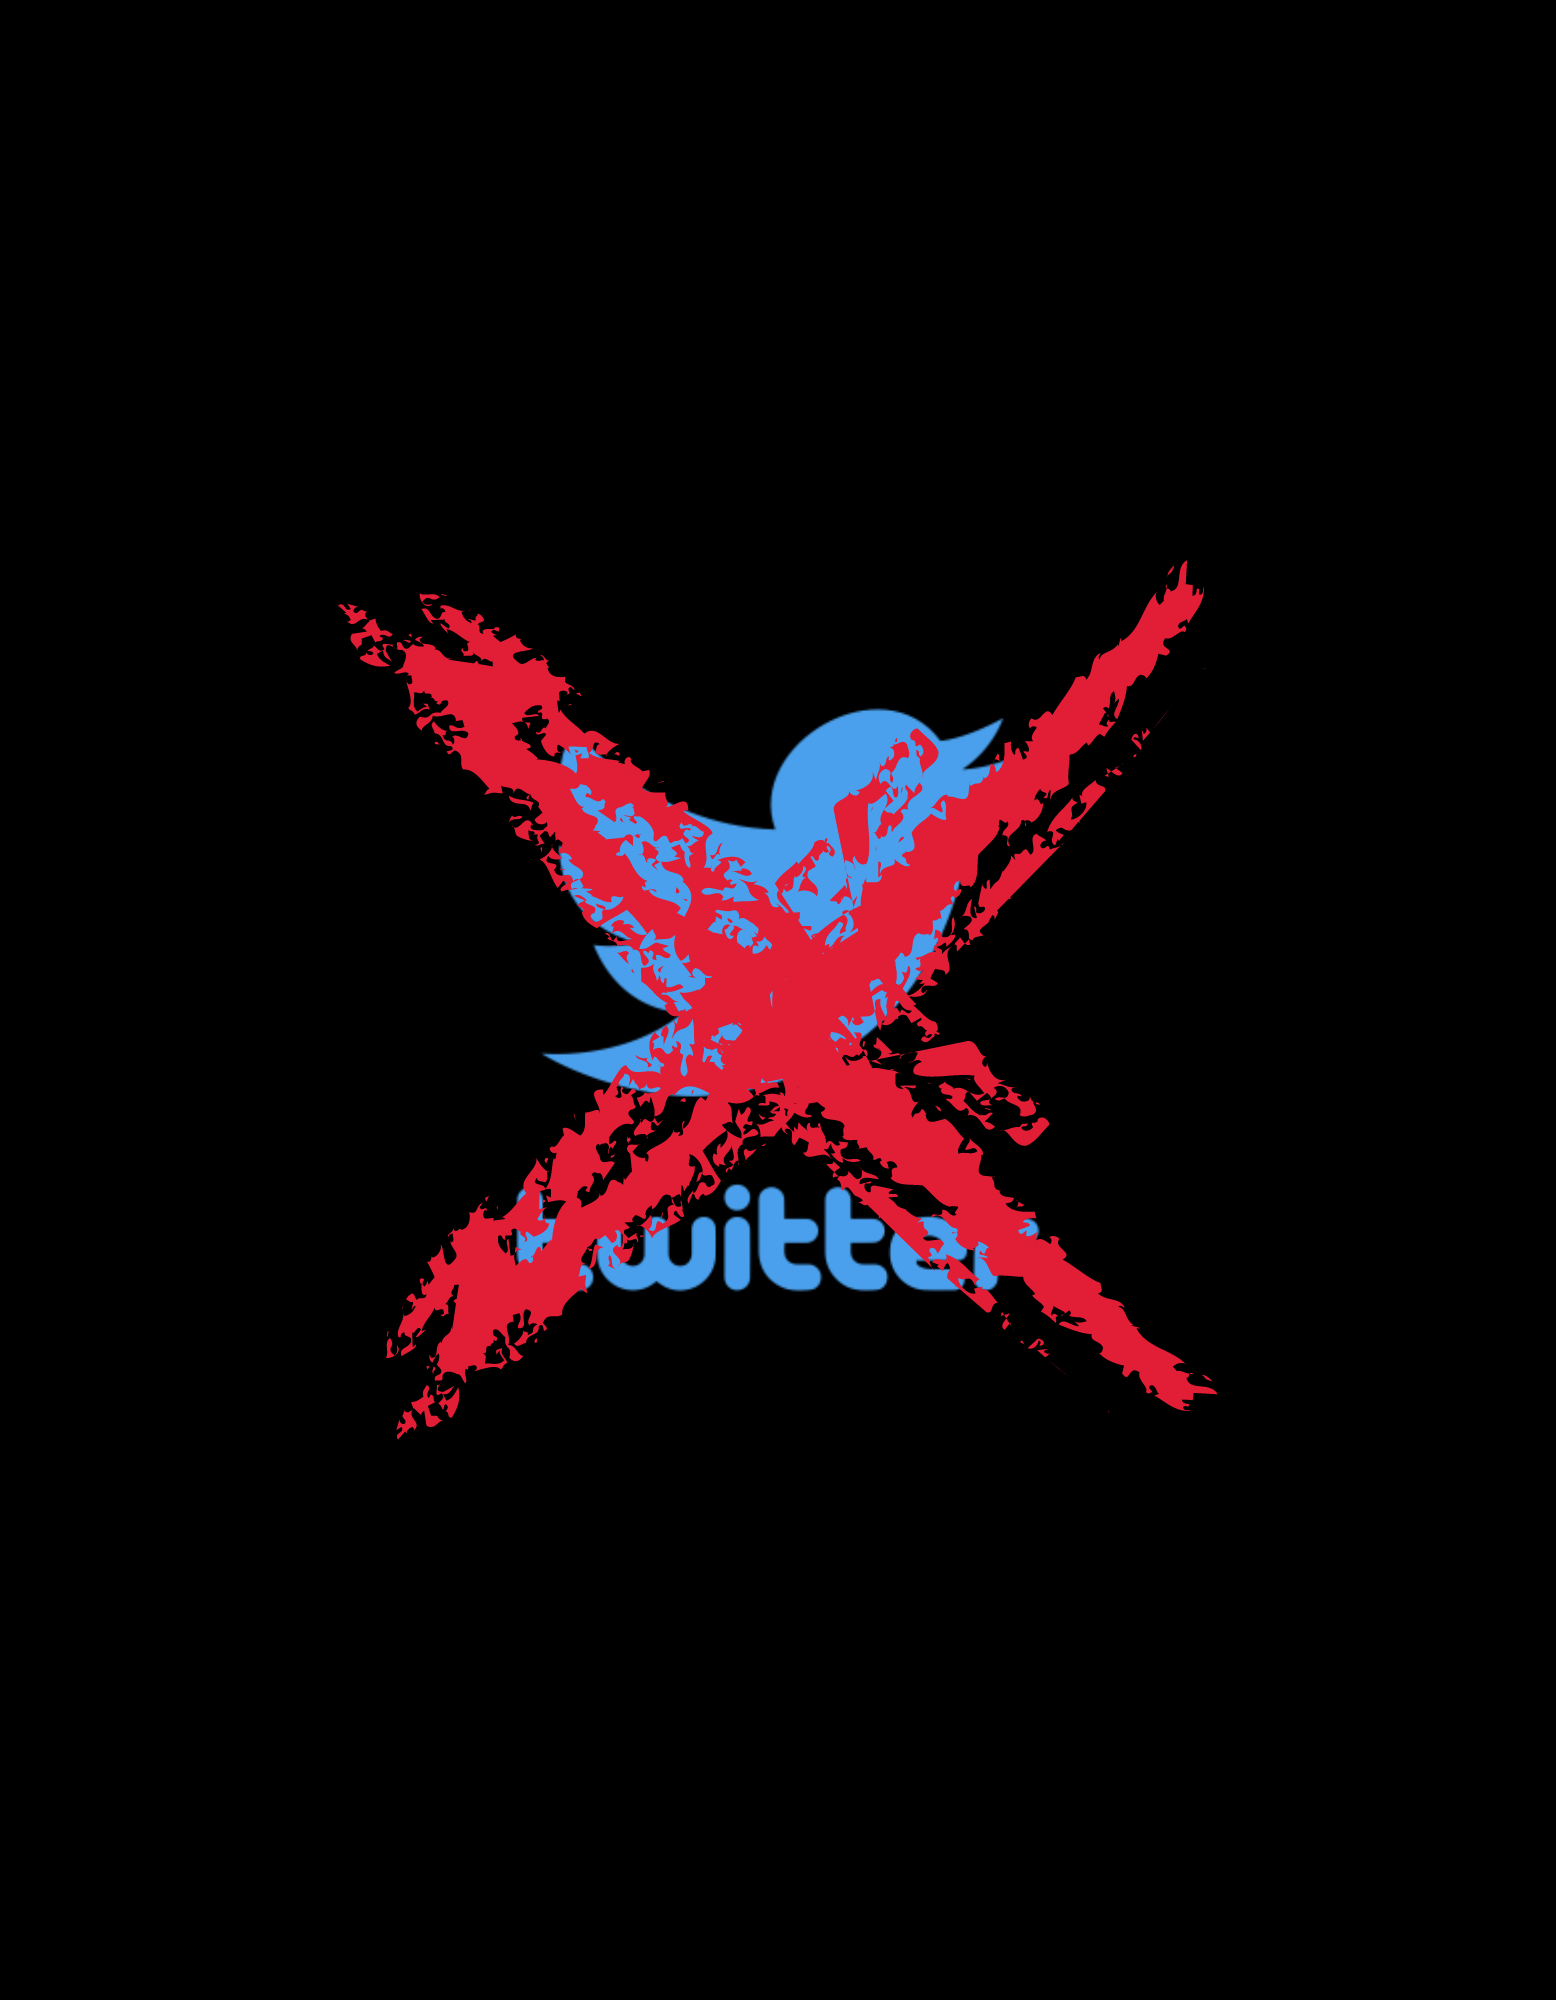 Twitter X Klistermärke